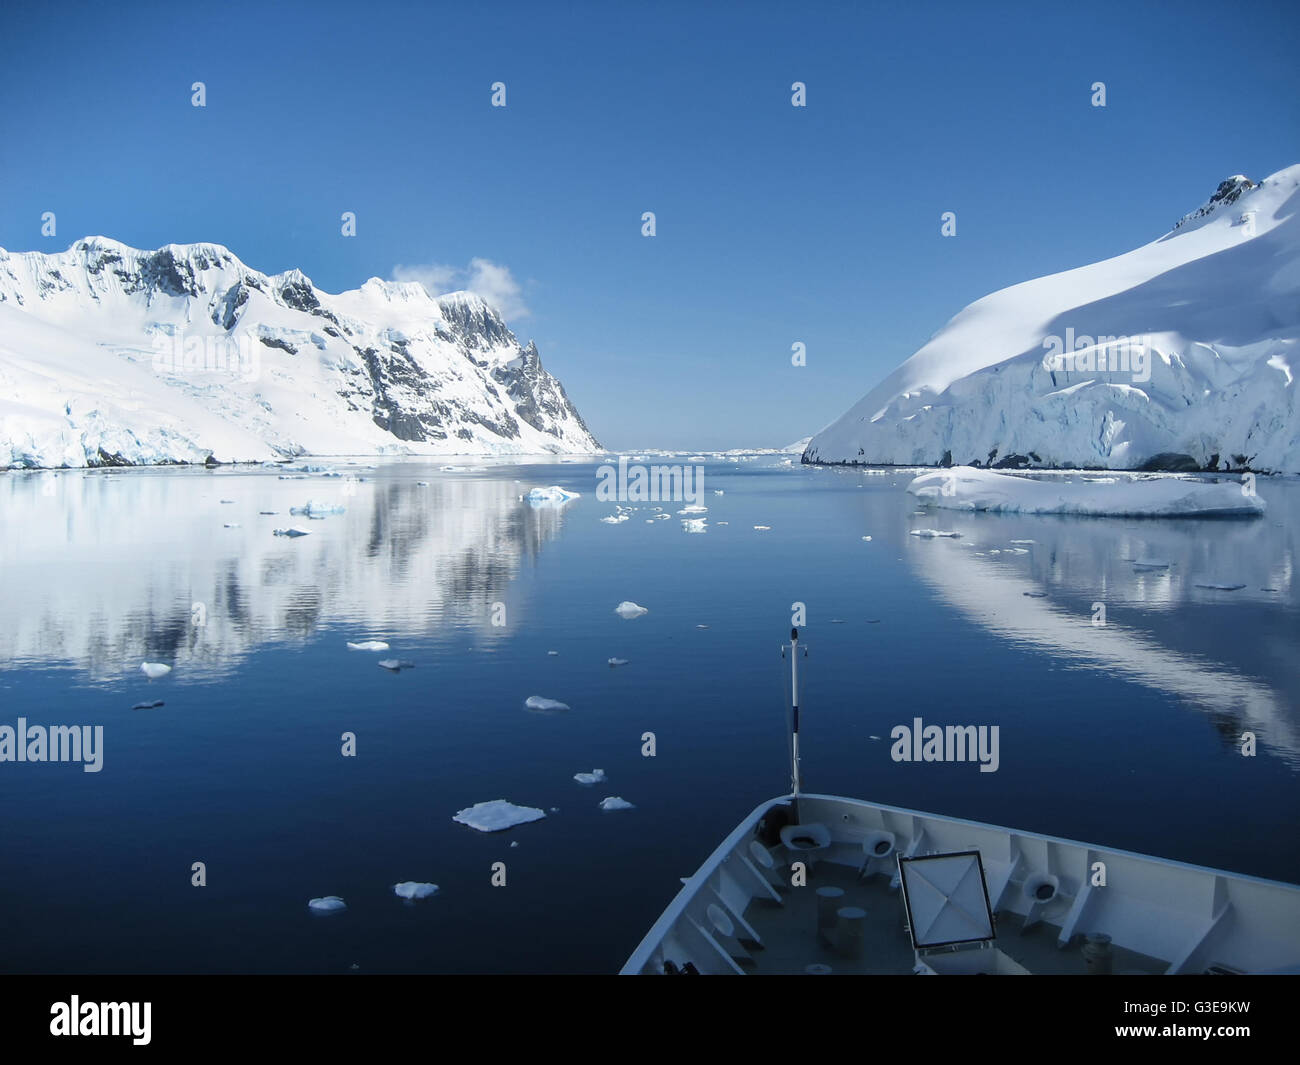 De superbes paysages de l'Antarctique du Canal Lemaire, avec ses eaux bleu clair reflétant les montagnes enneigées. Banque D'Images